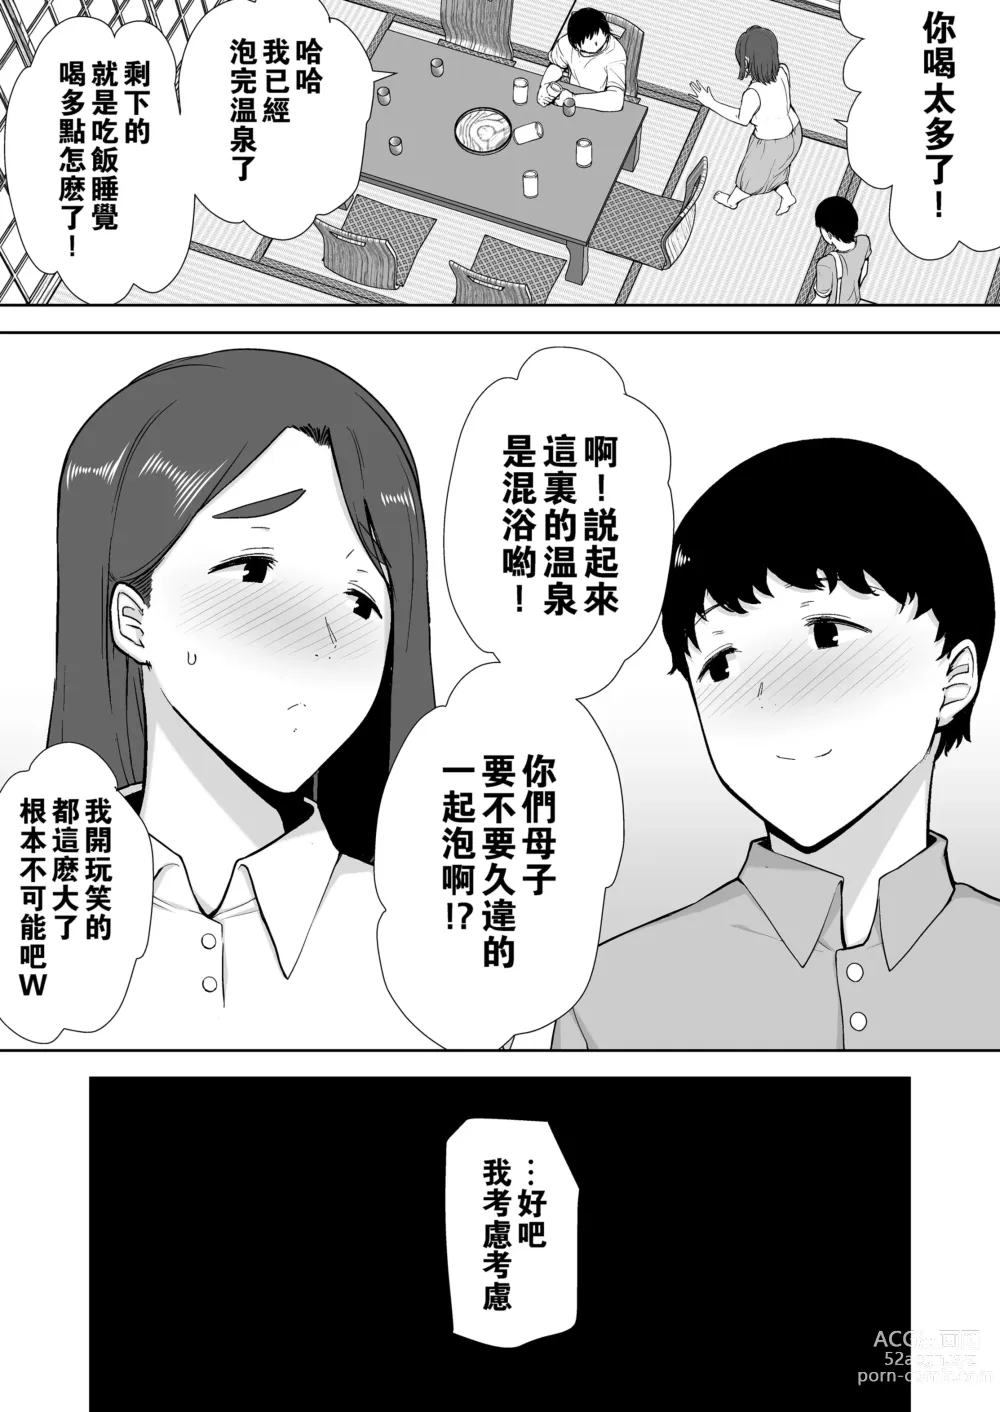 Page 48 of doujinshi 母印堂3